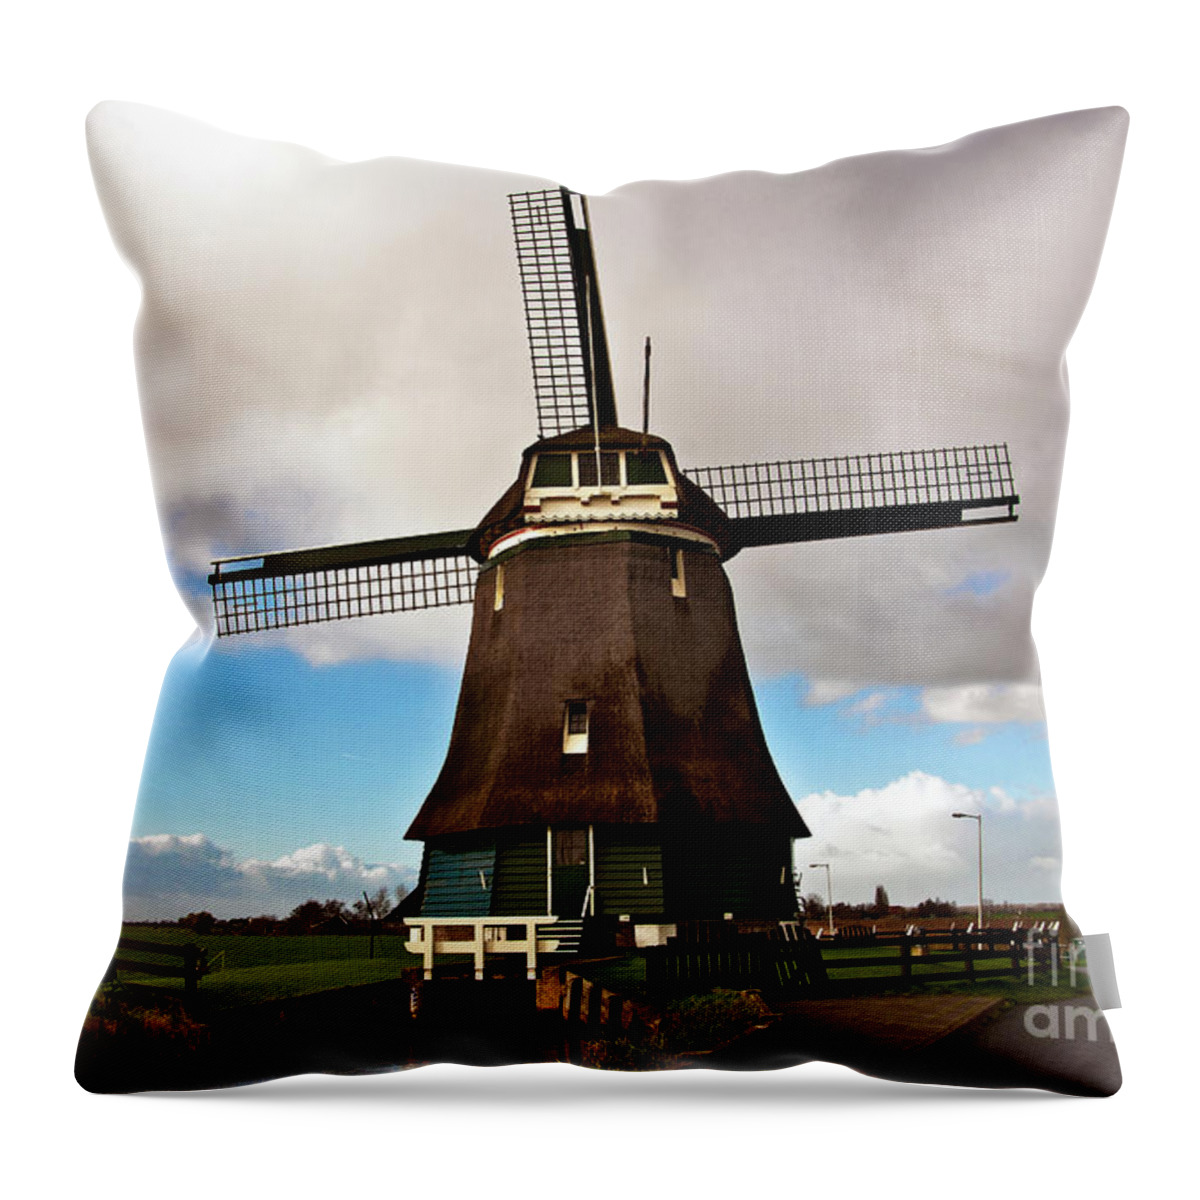 Traditional Dutch Windmill Throw Pillow featuring the photograph Traditional Dutch Windmill near Volendam by Silva Wischeropp